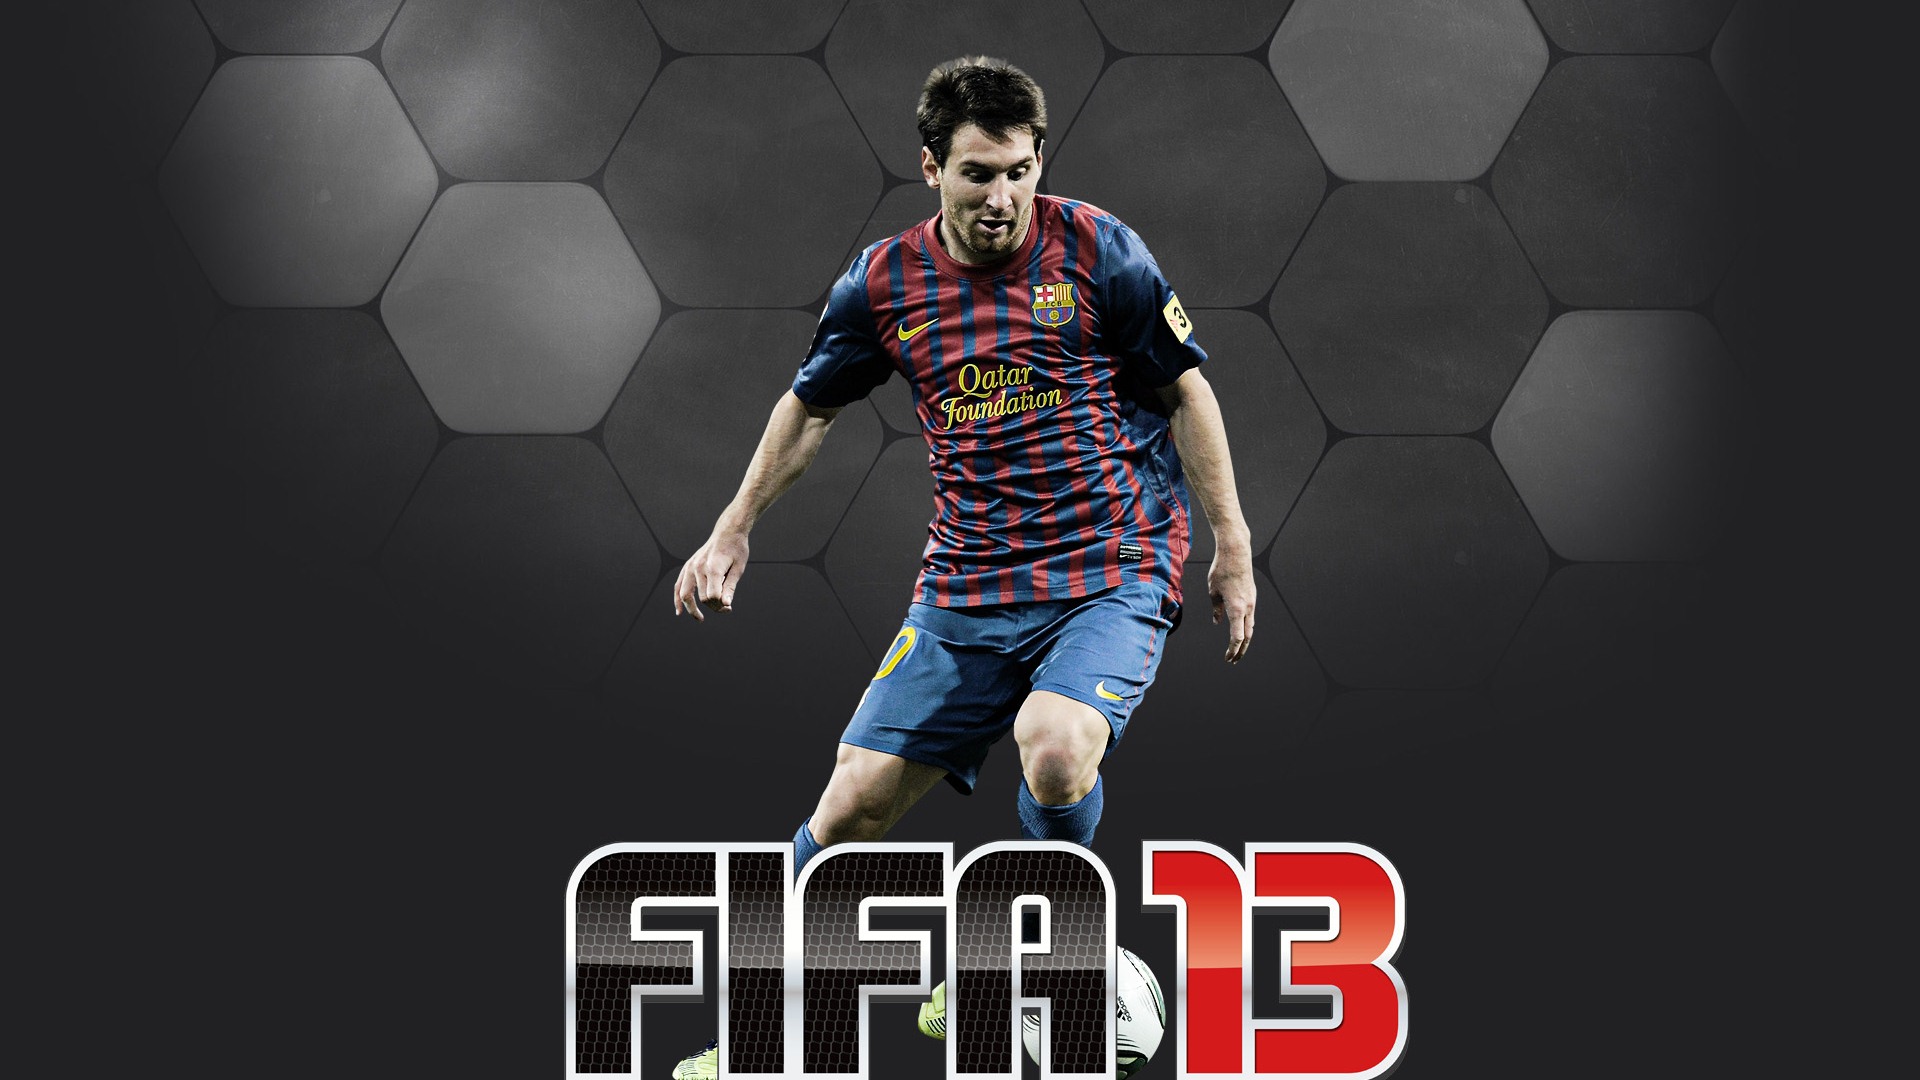 FIFA 13 Spiel HD Wallpaper #6 - 1920x1080